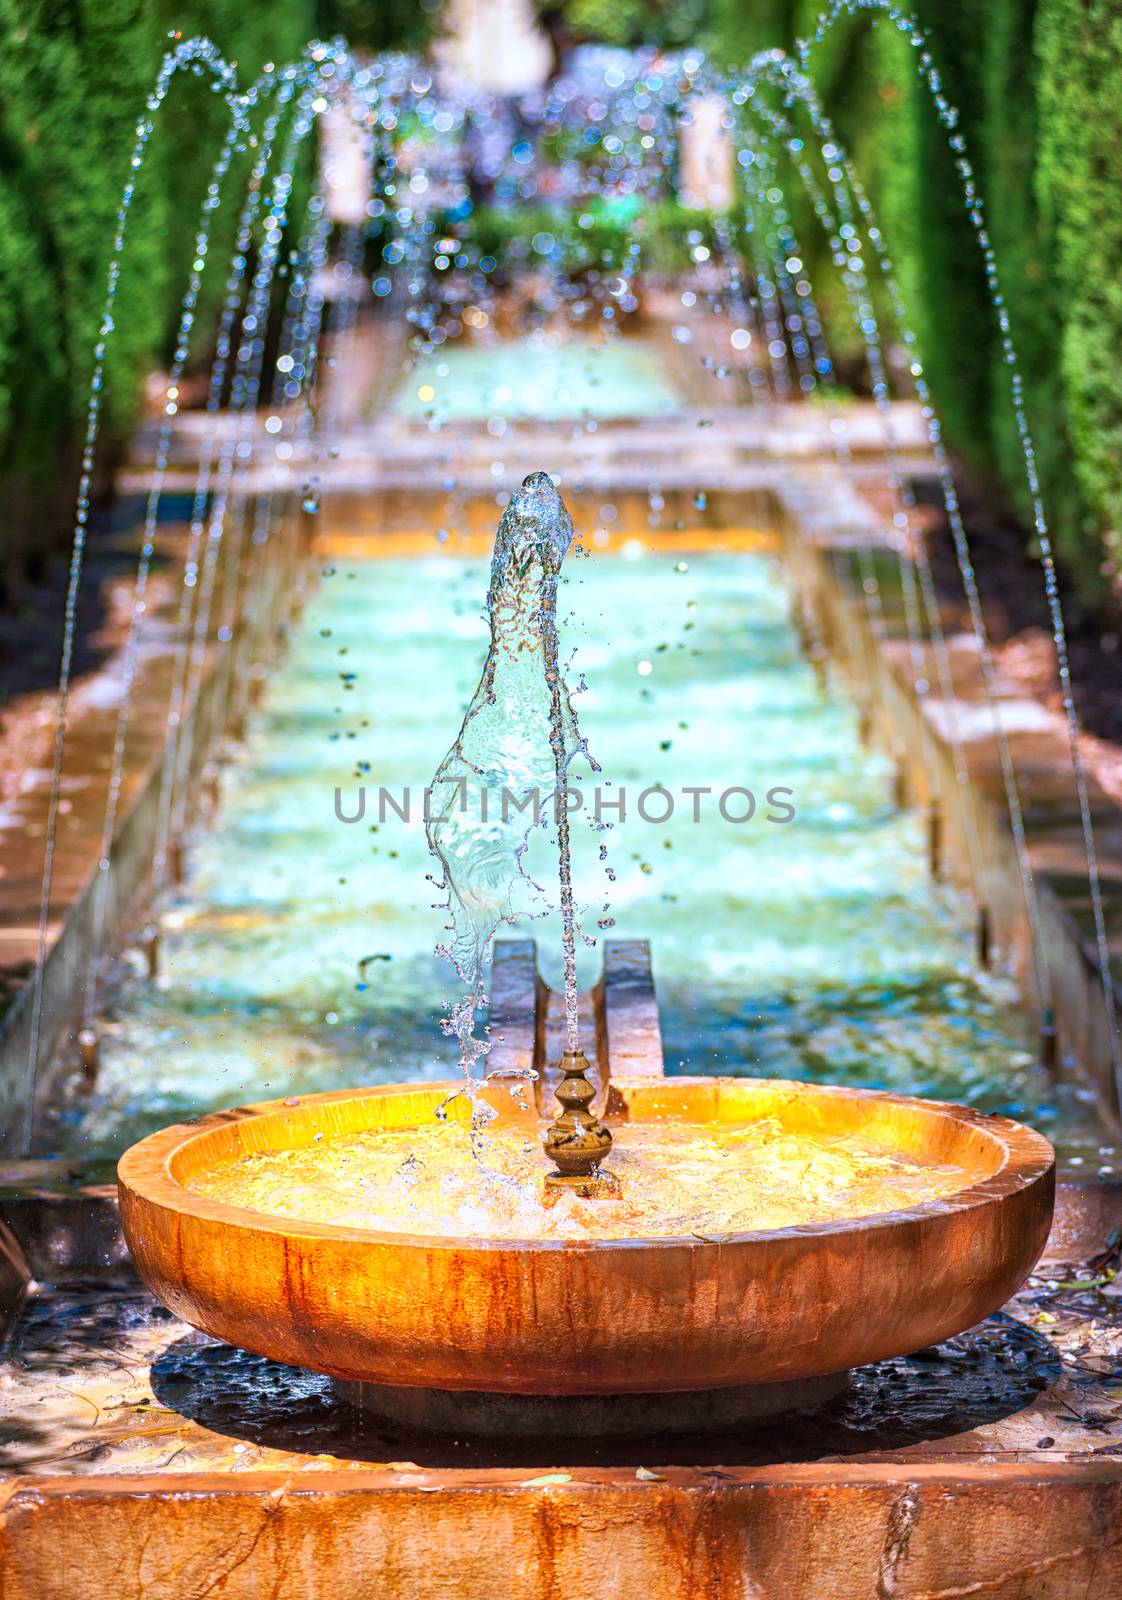 Fountain in the oriental palace garden of Palma de Majorca, Spain